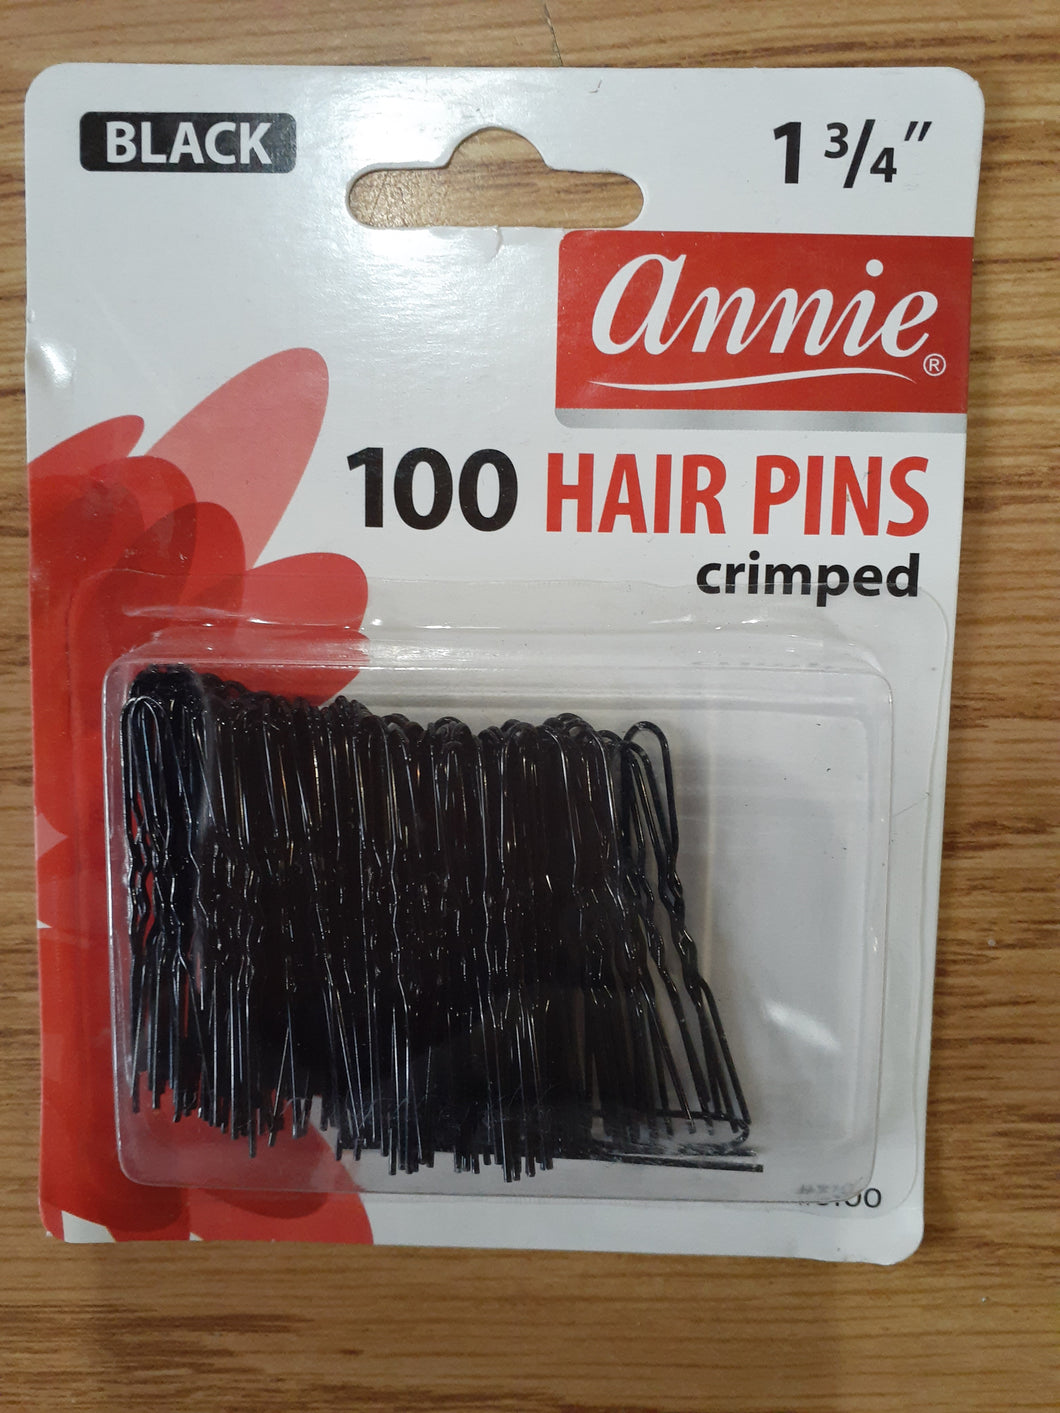 Annie black 100 hair pins crimped 1 3/4 